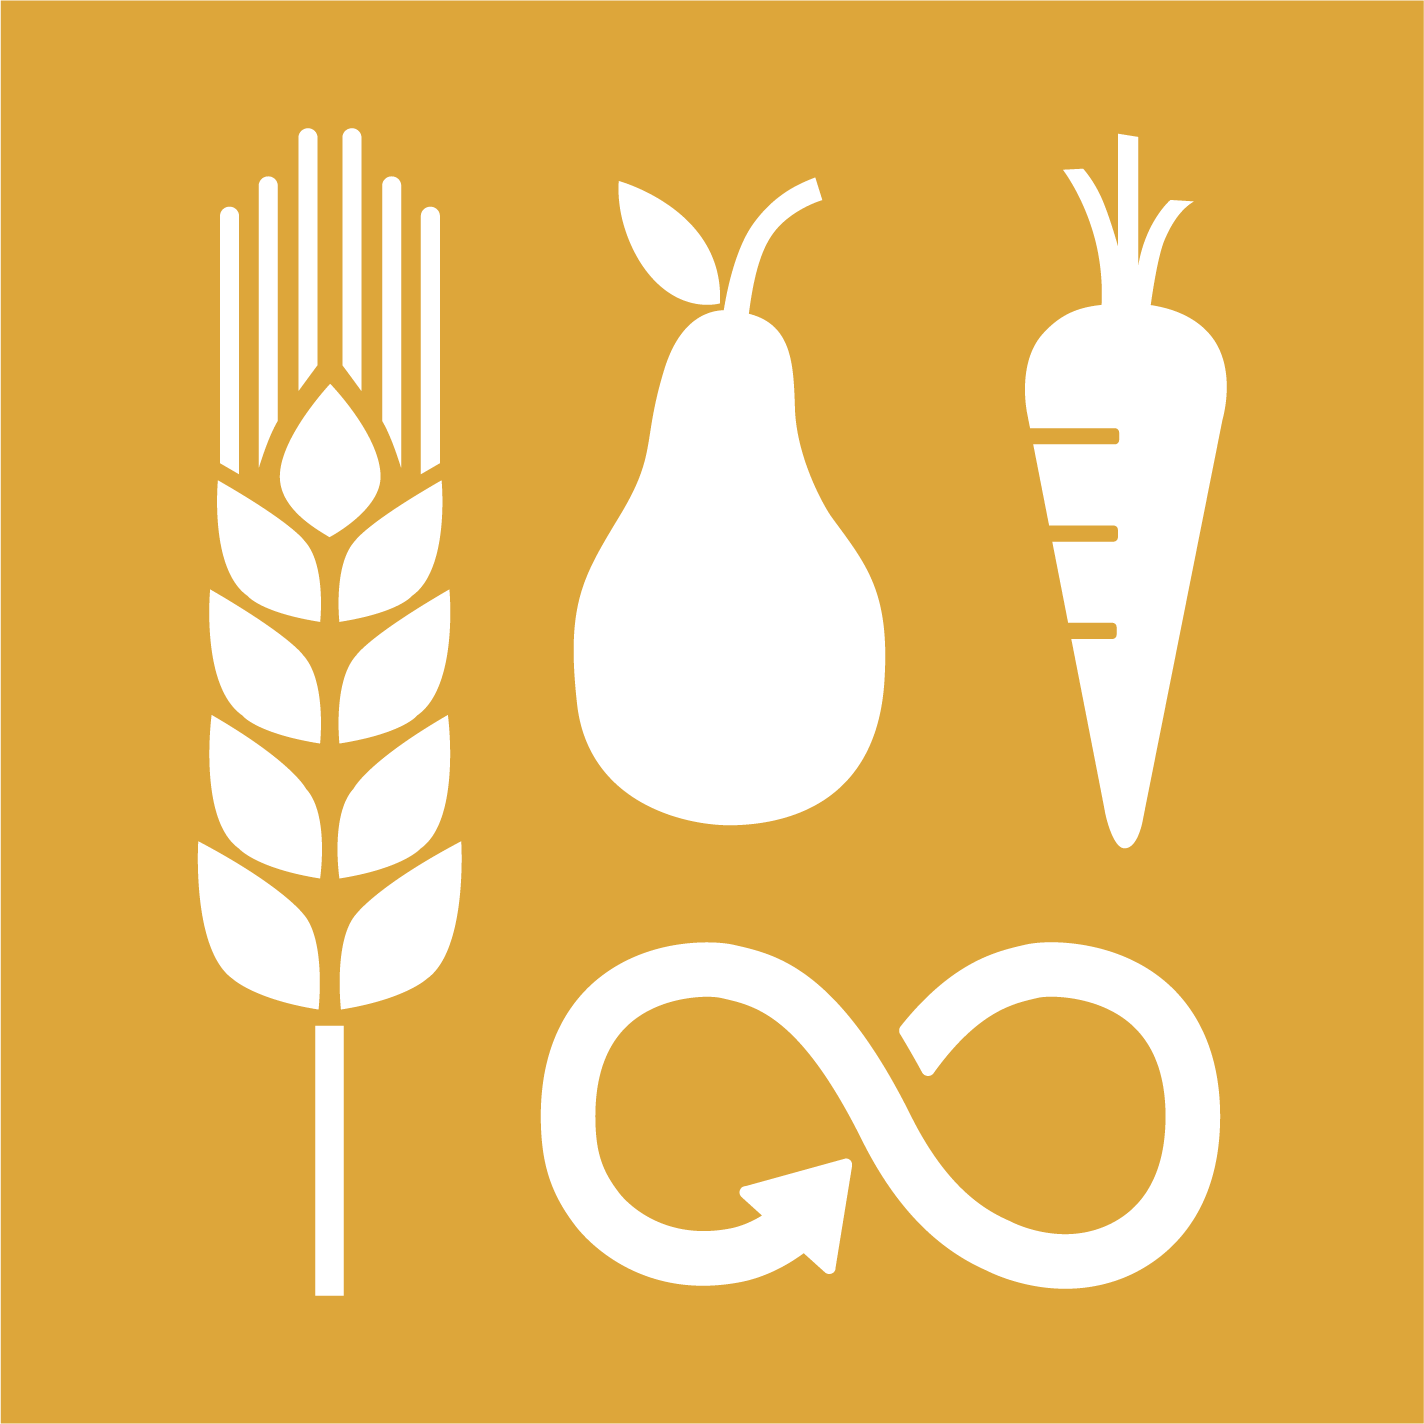 2.4 - Producción sostenible de alimentos y prácticas agrícolas resilientes